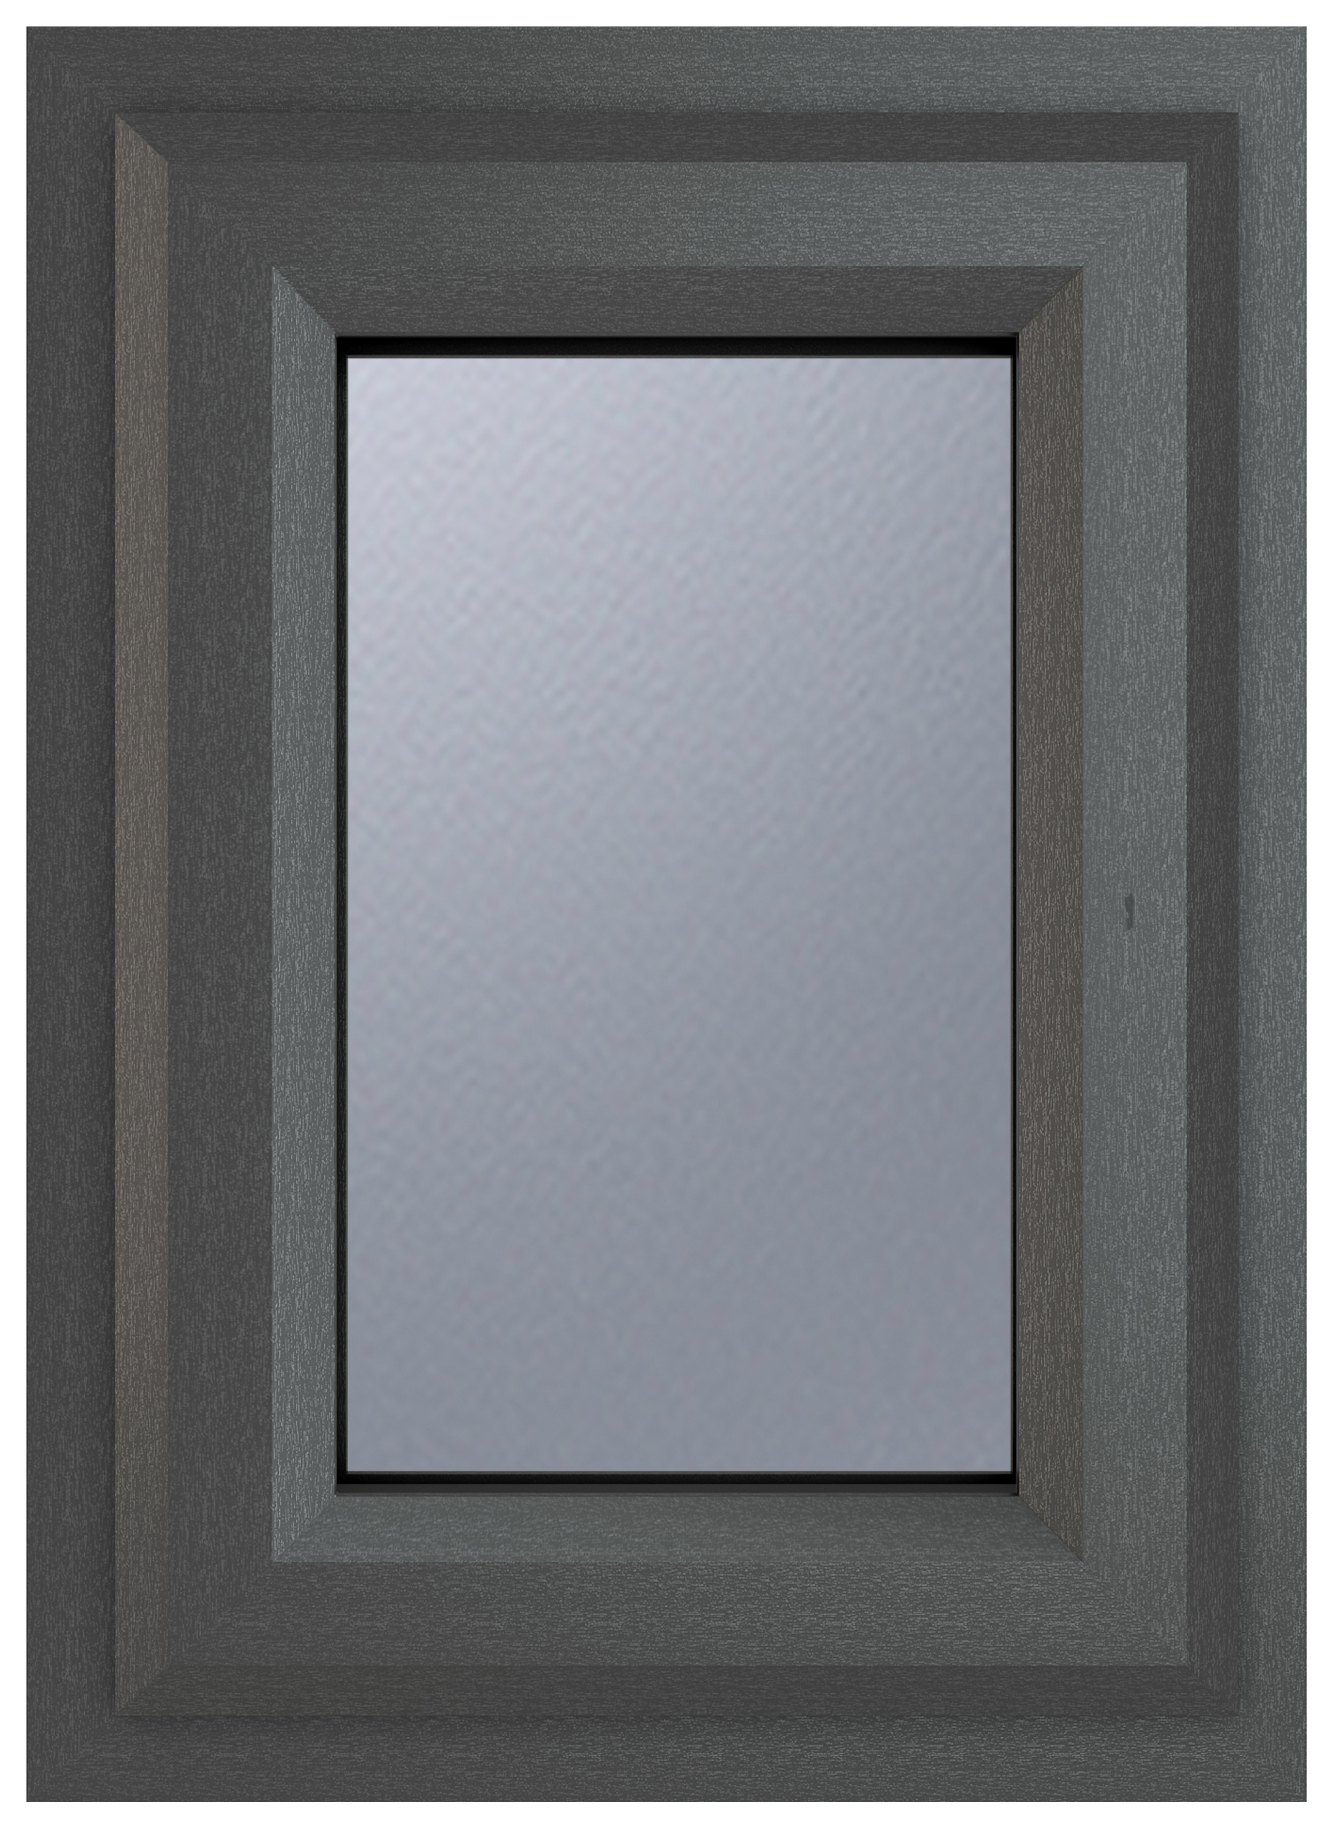 Crystal uPVC Grey Top Opener Obscure Double Glazed Window - 440 x 610mm